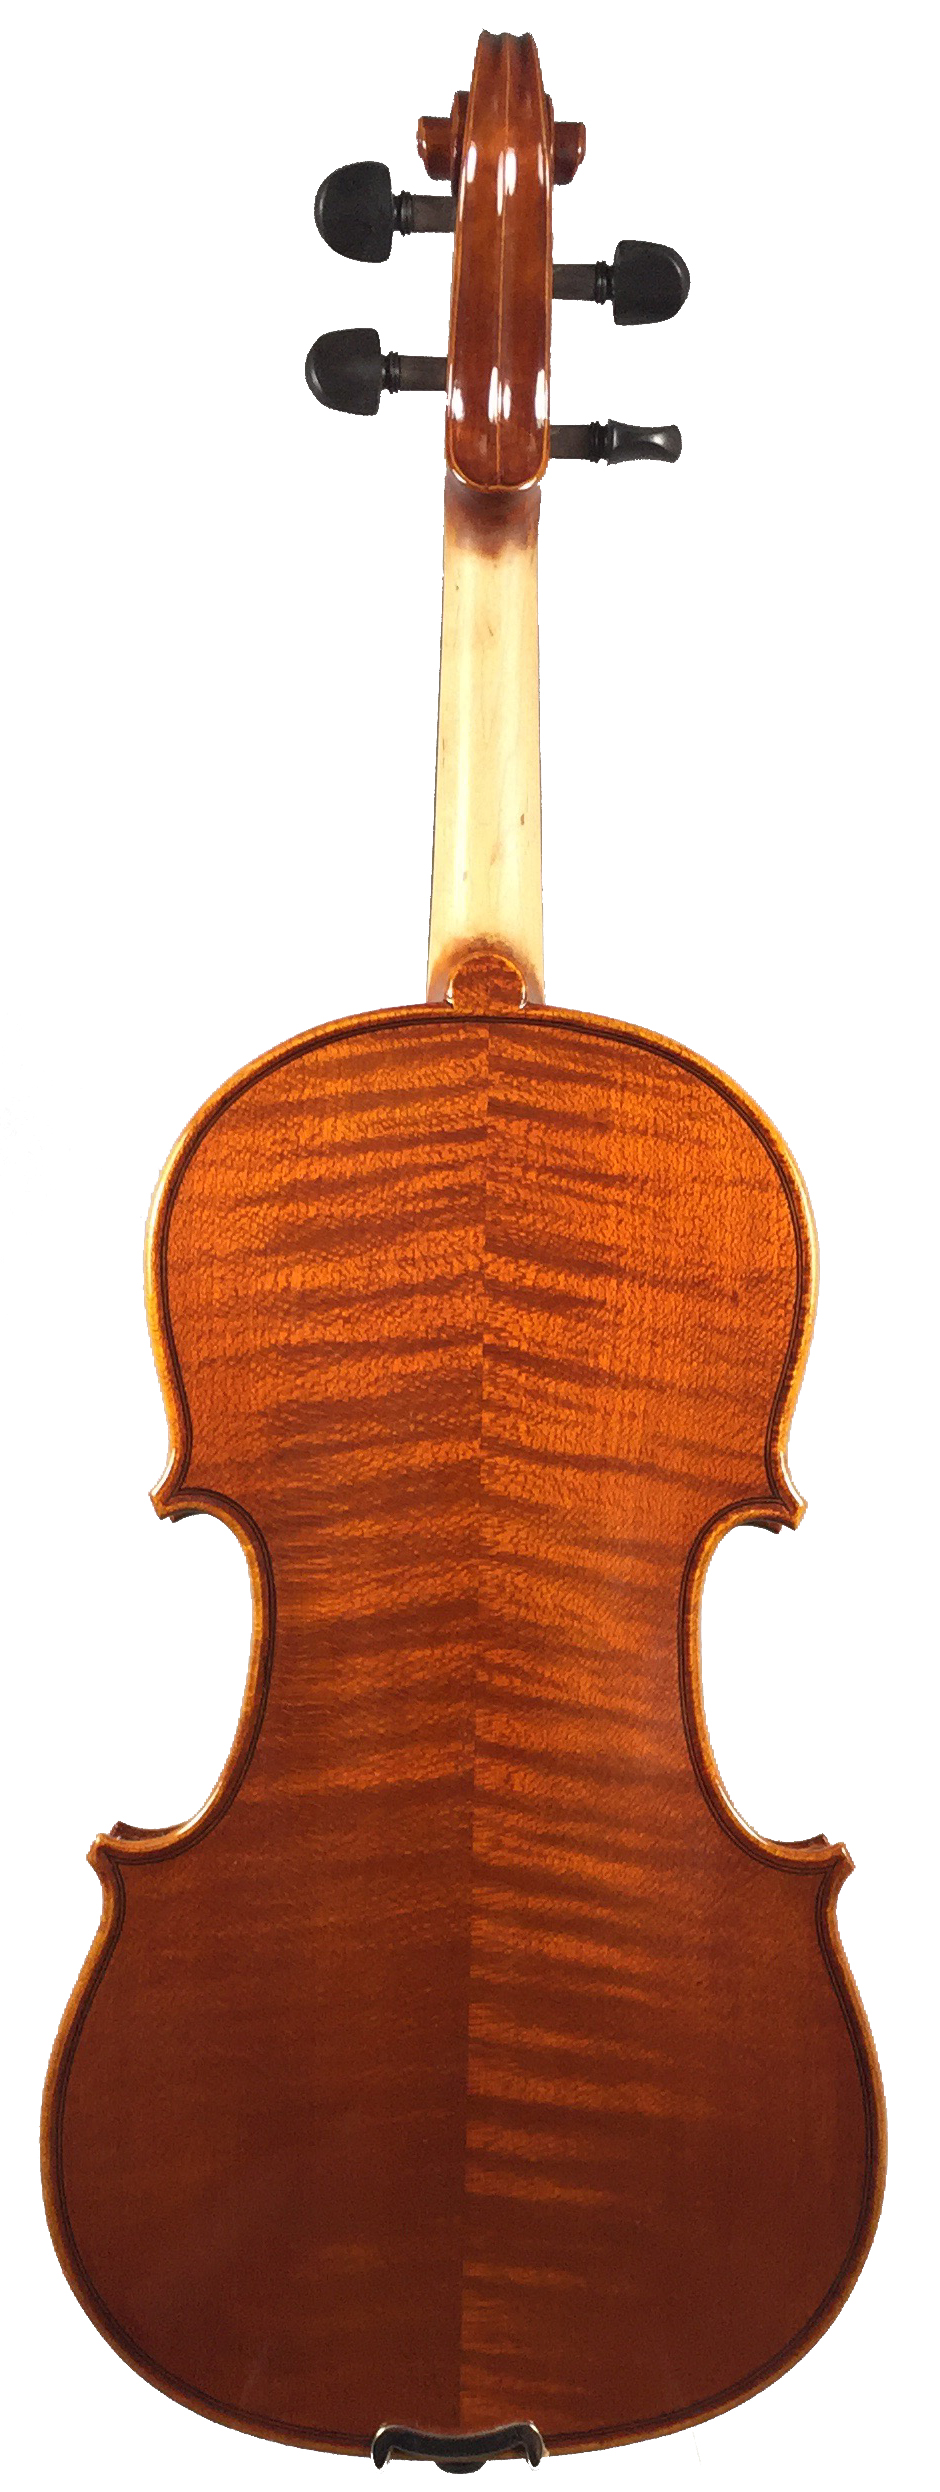 Student Instruments — Wyatt Violin Shop